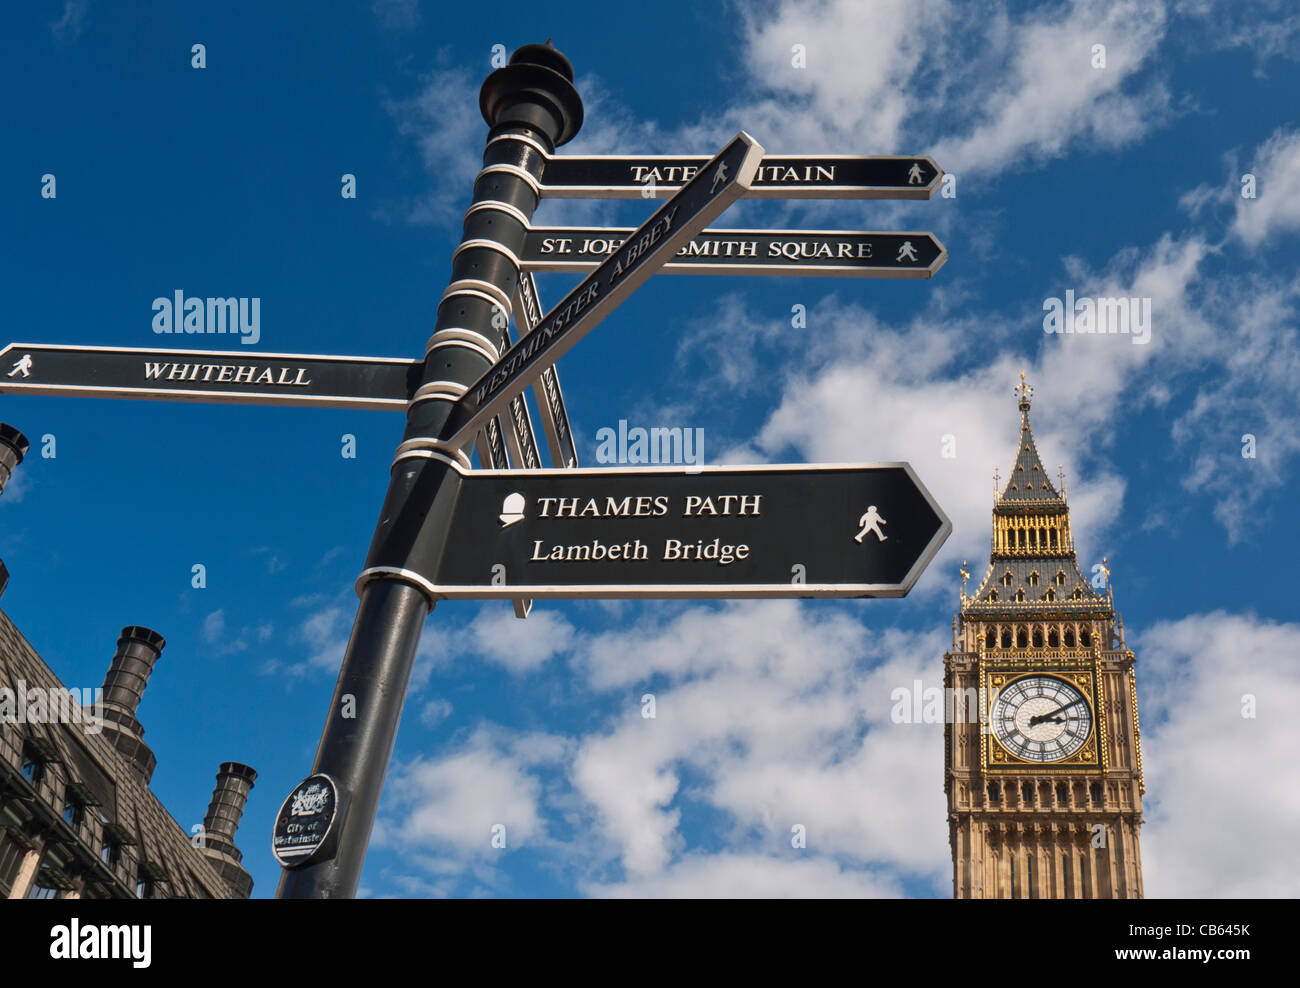 THAMES PATH Schild in Westminster Regie Besucher zu verschiedenen Sehenswürdigkeiten Big Ben im Hintergrund London UK Stockfoto